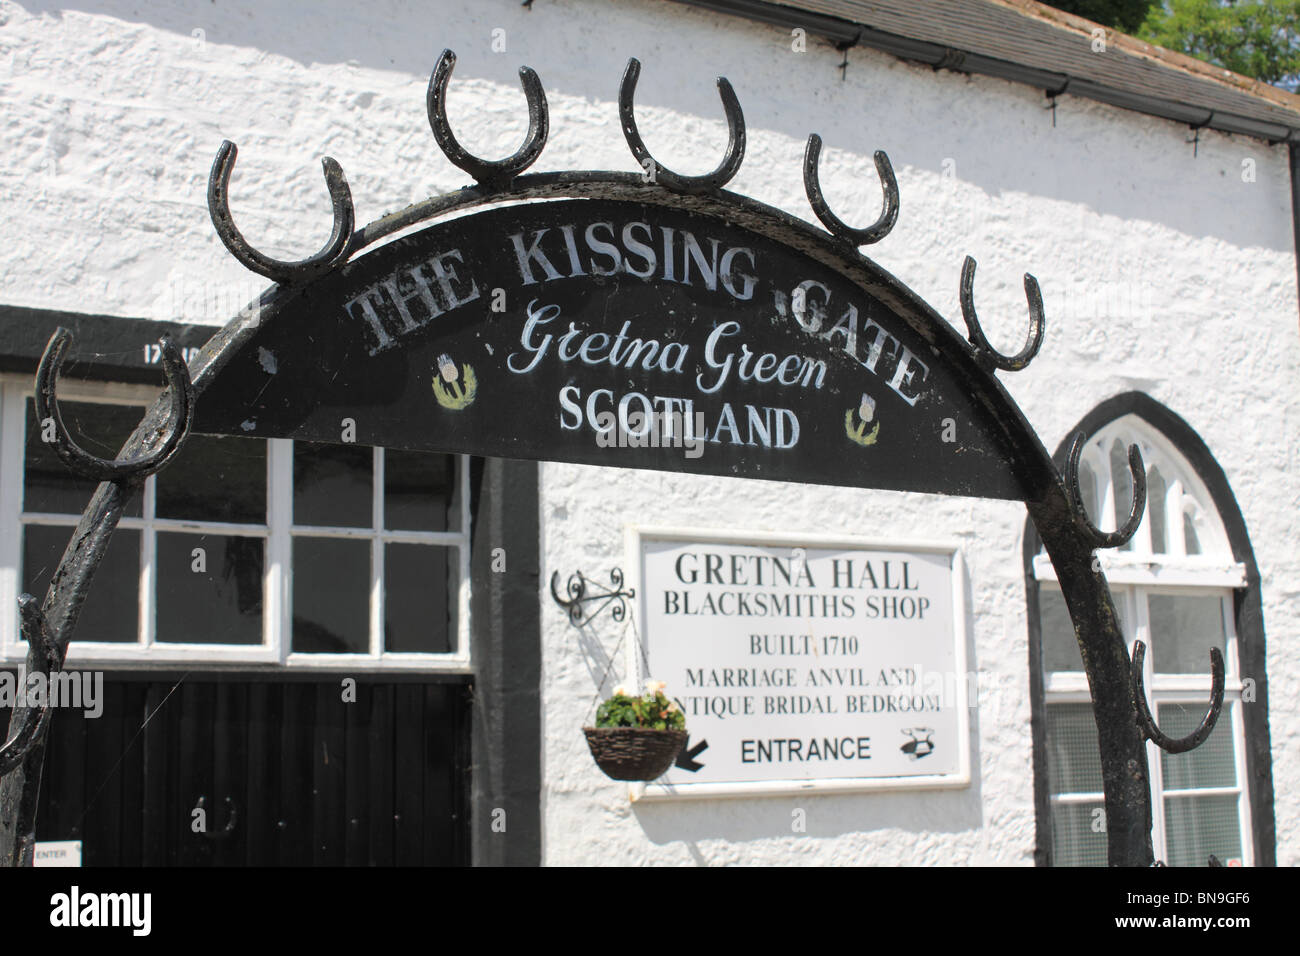 The Kissing Gate, Gretna Green, Scotland Stock Photo